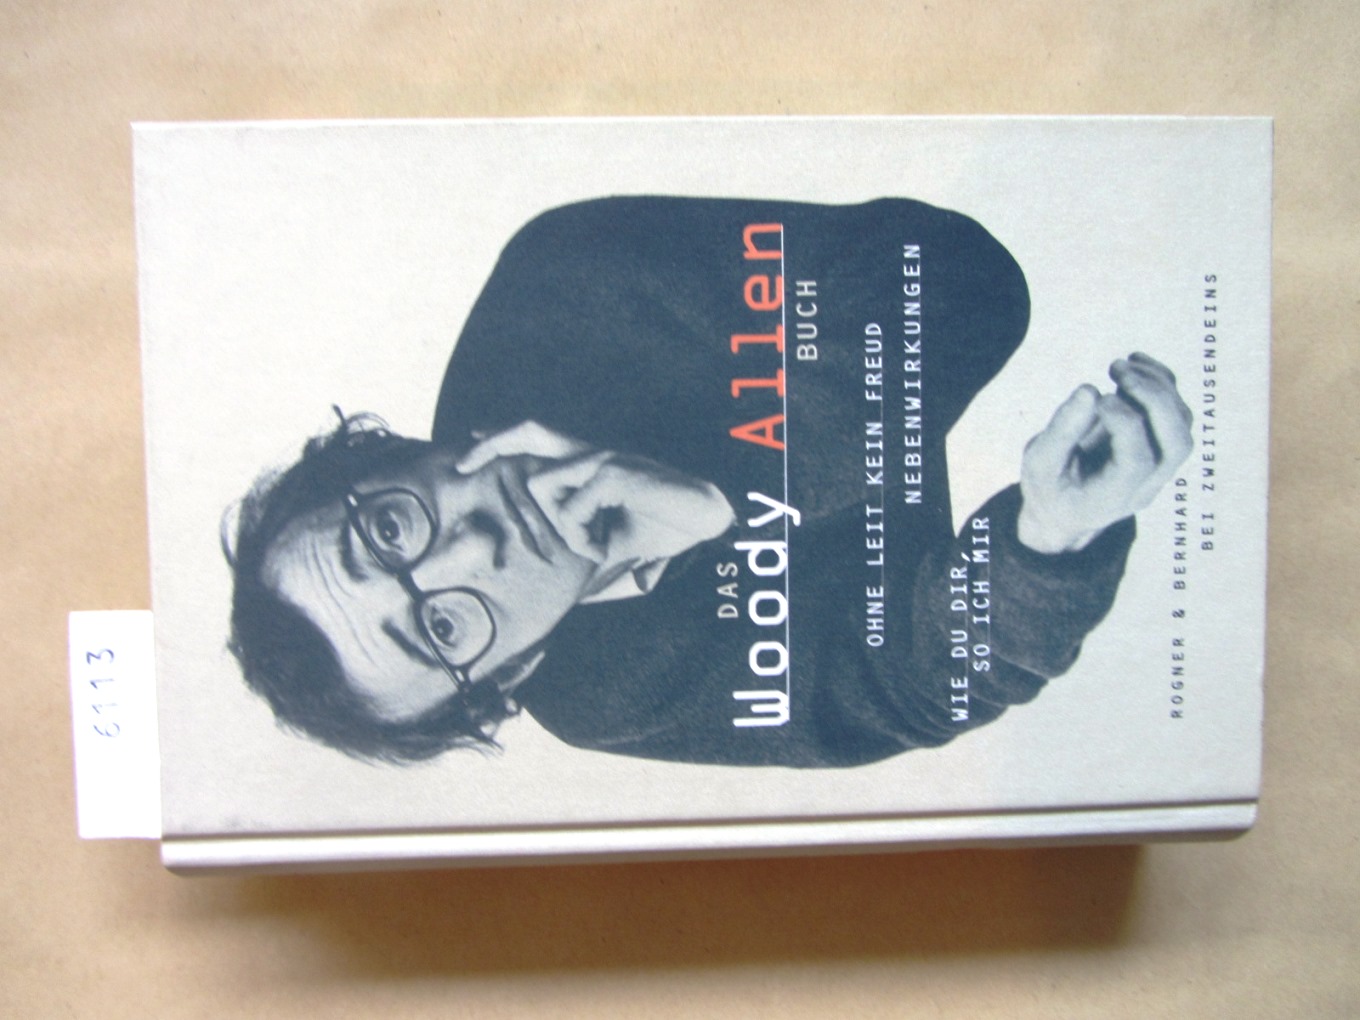 Allen, Woody:  Das Woody Allen Buch. Wie du dir, so ich mir. Ohne Leit kein Freud. Nebenwirkungen. 3 Titel in 1 Band. 